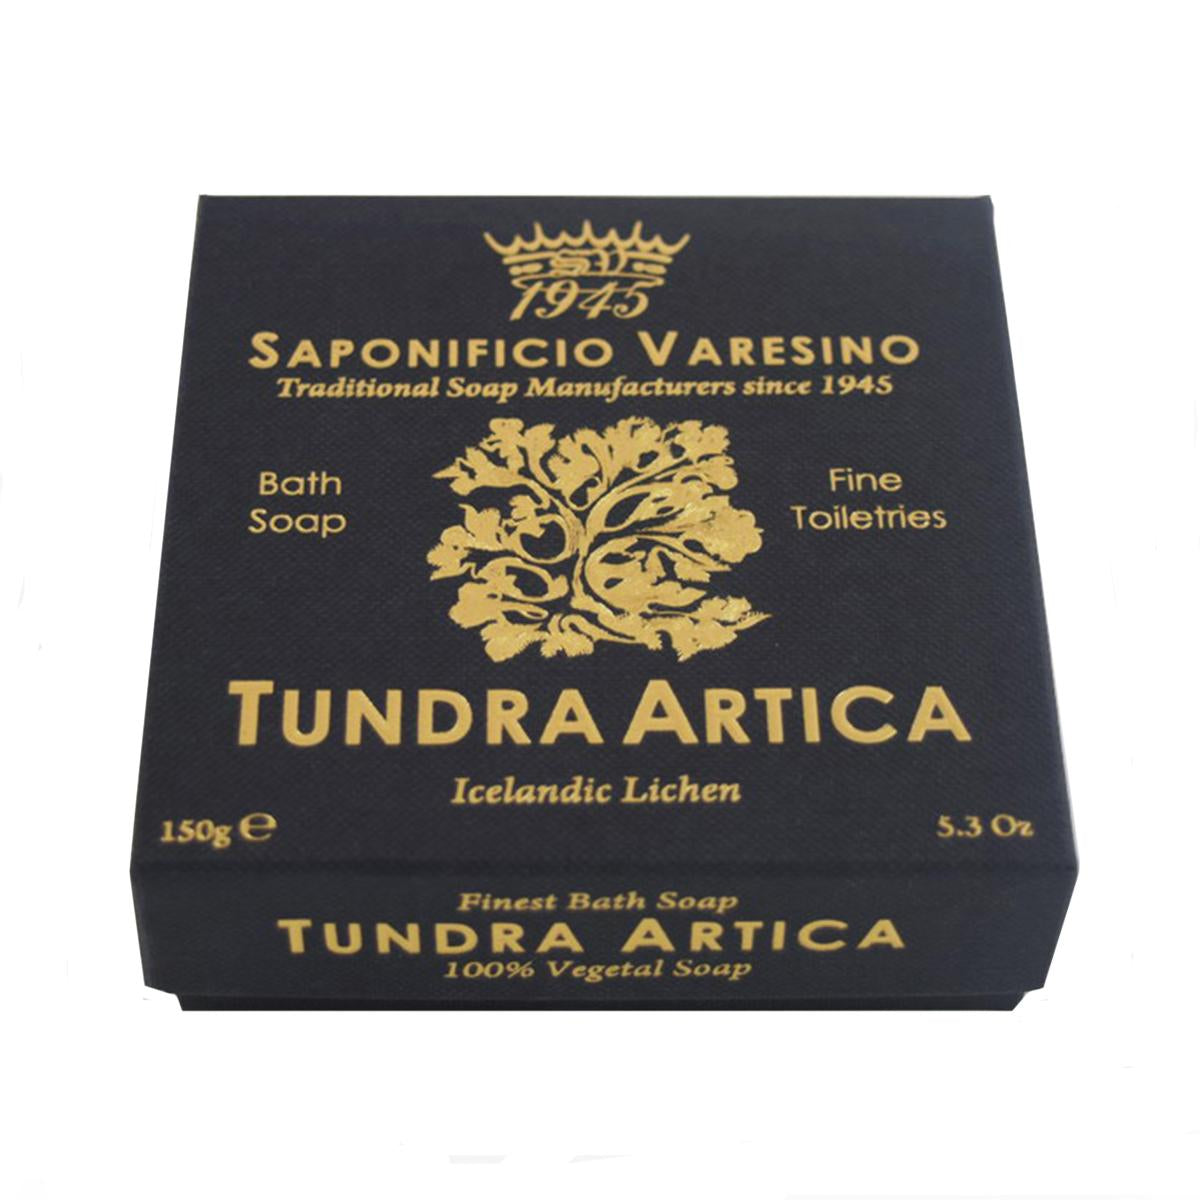 Primary image of Tundra Artica Bath Soap